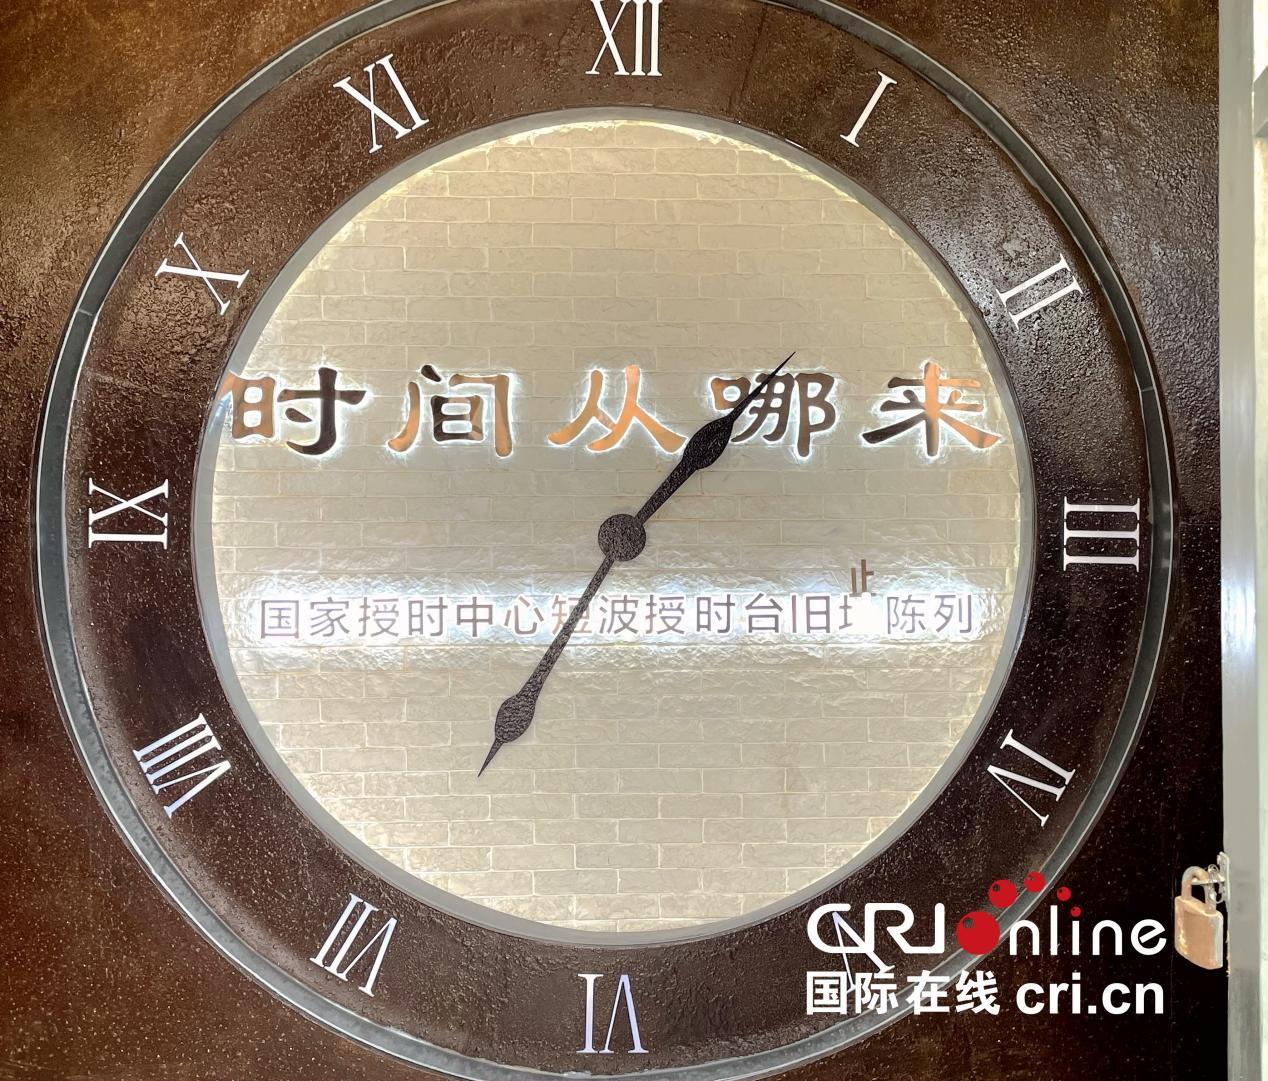 世界博物馆日 | 打卡时间博物馆 探秘“北京时间”背后的故事_fororder_图片3